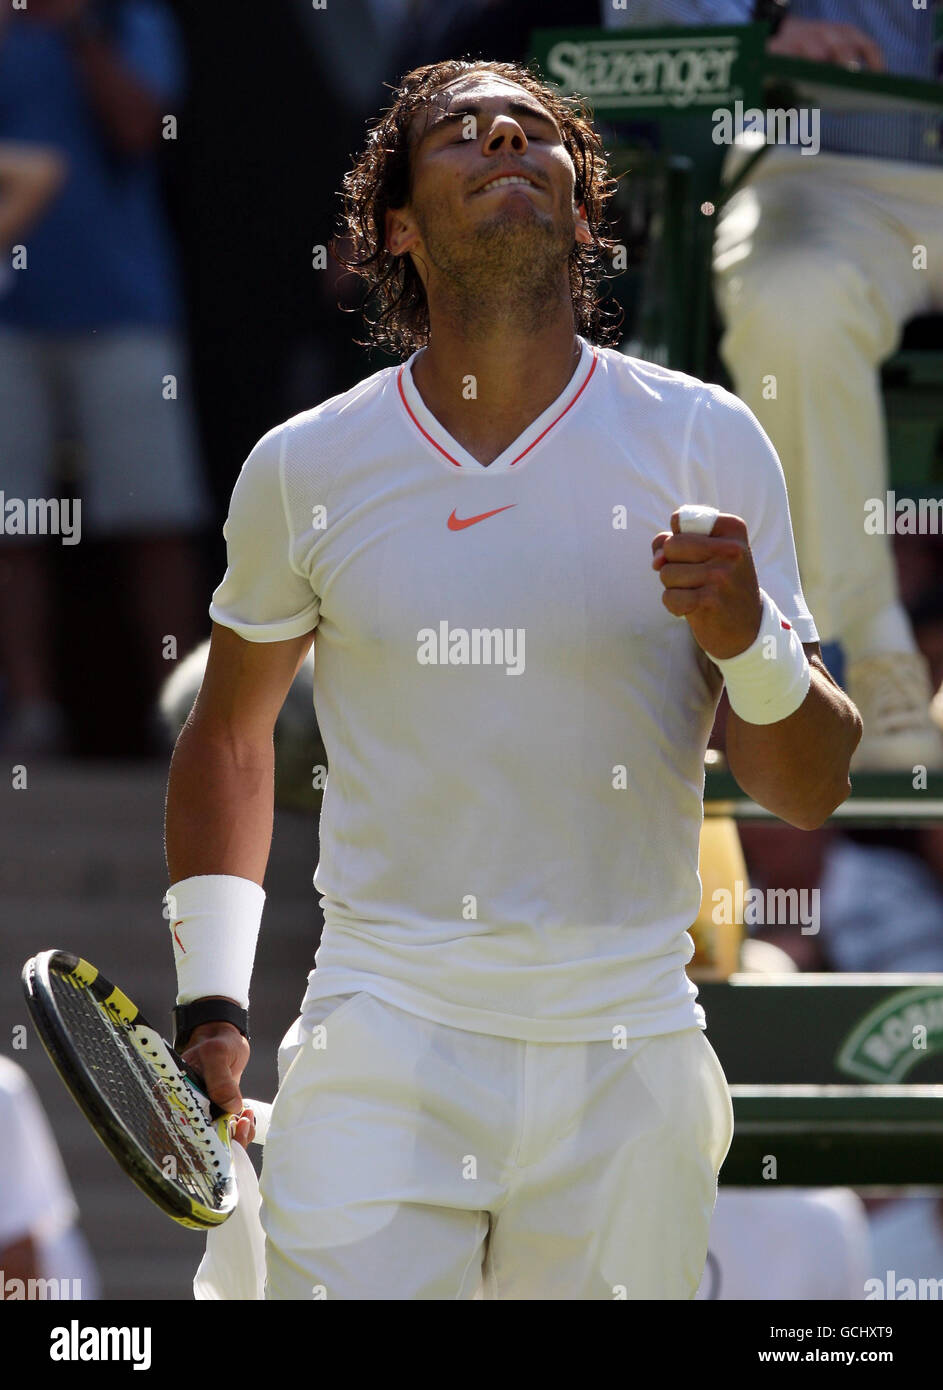 Il spagnolo Rafael Nadal celebra la sua vittoria sul giapponese Kei Nishikori durante il secondo giorno dei Campionati Wimbledon 2010 all'All England Lawn Tennis Club di Wimbledon. Foto Stock